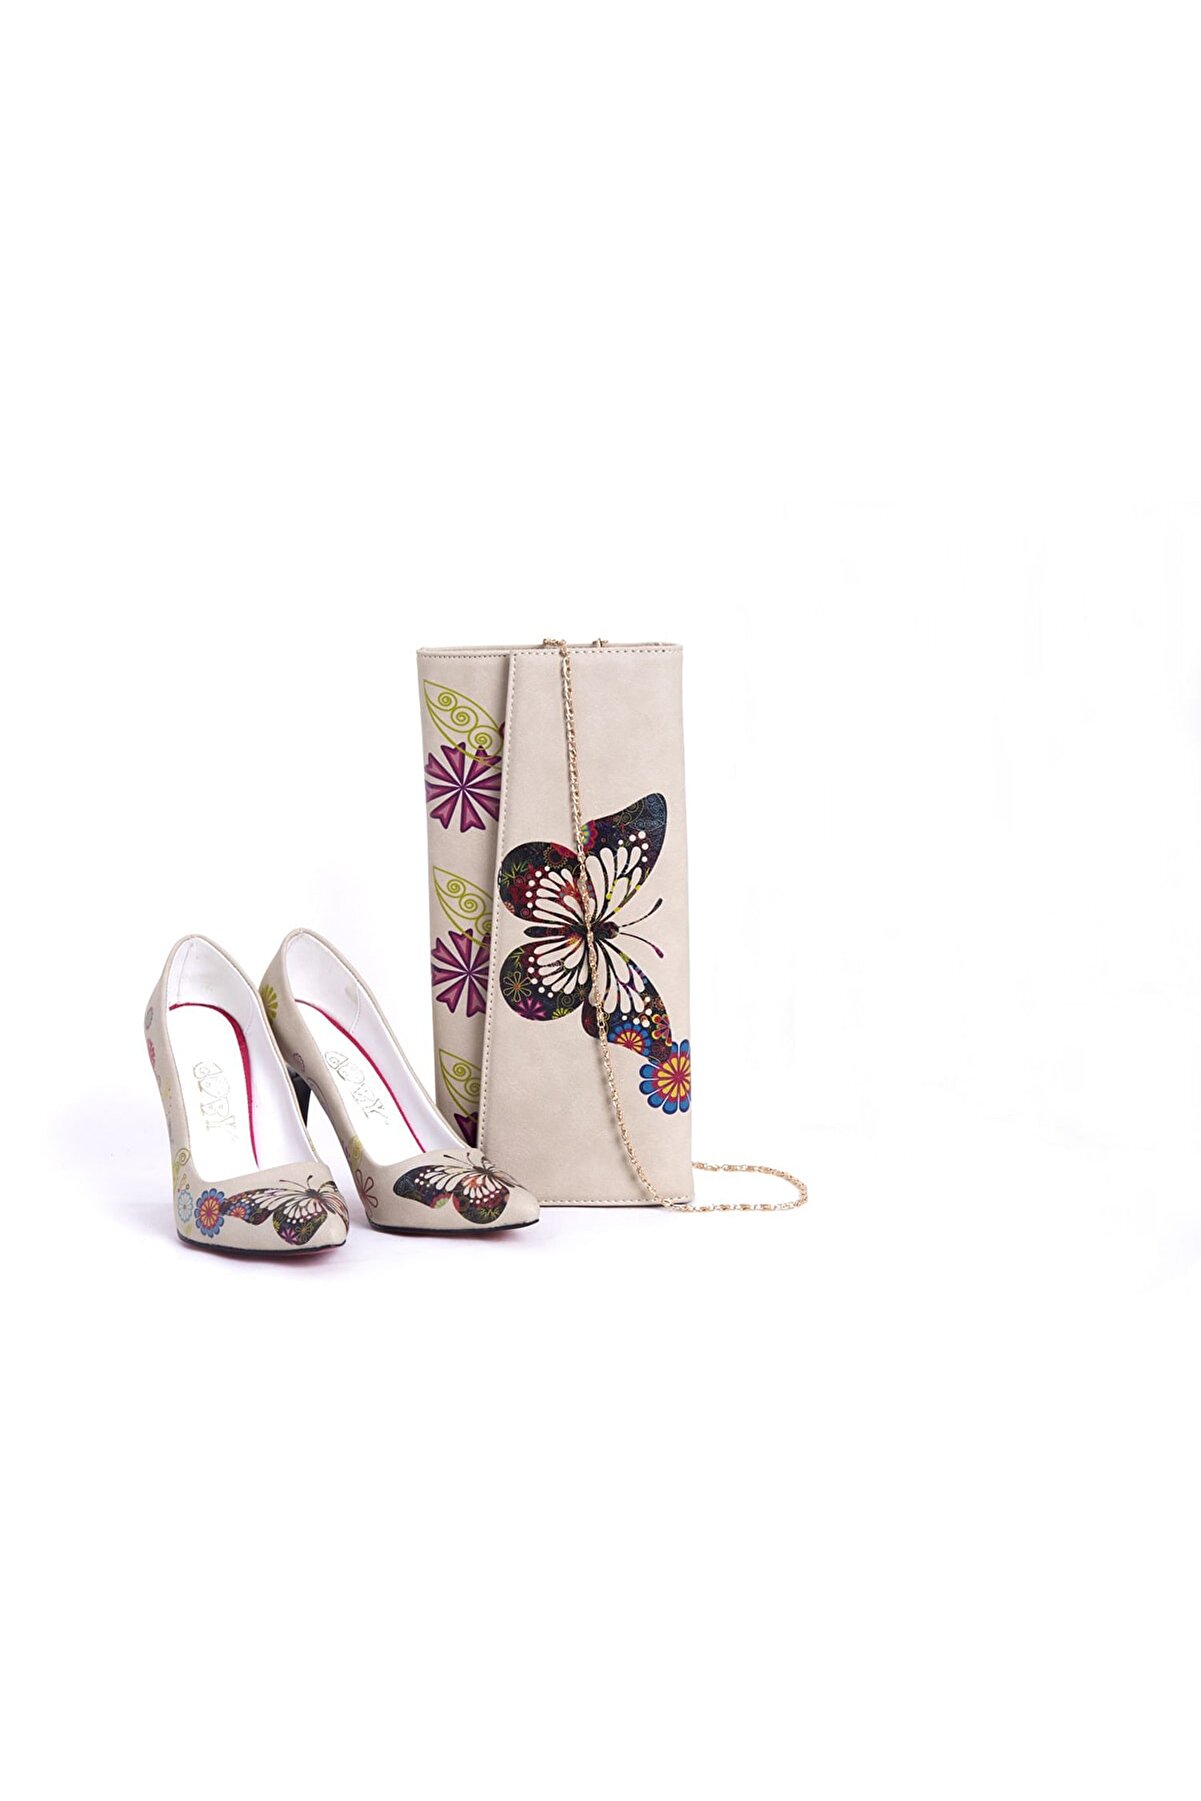 Goby Özel Tasarım- Baskılı- Kelebek Desenli- Topuklu Ayakkabı-çanta Takım